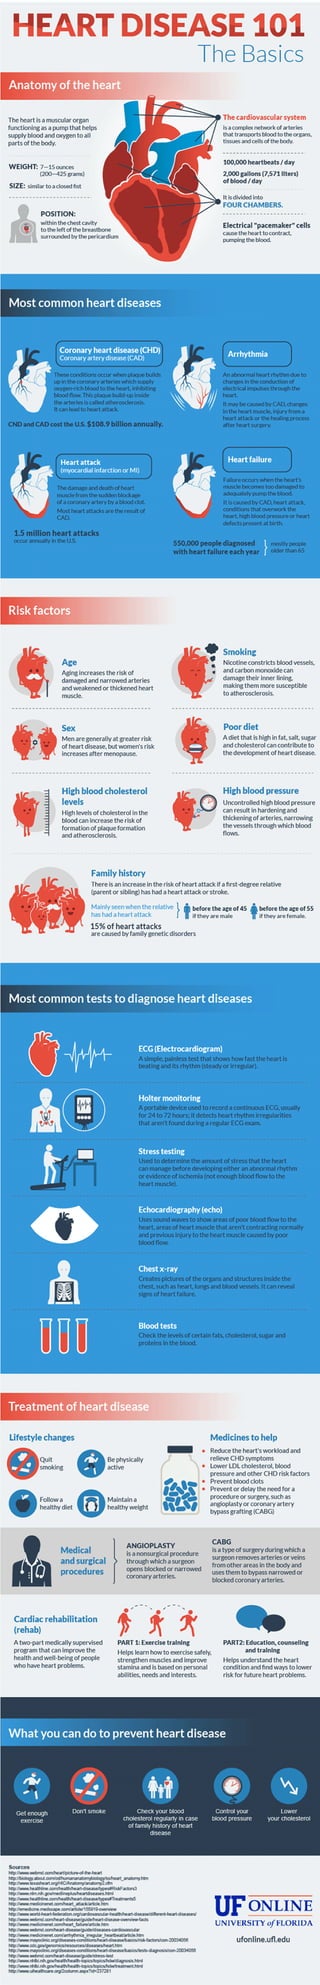 Basic Prevention of Heart Disease